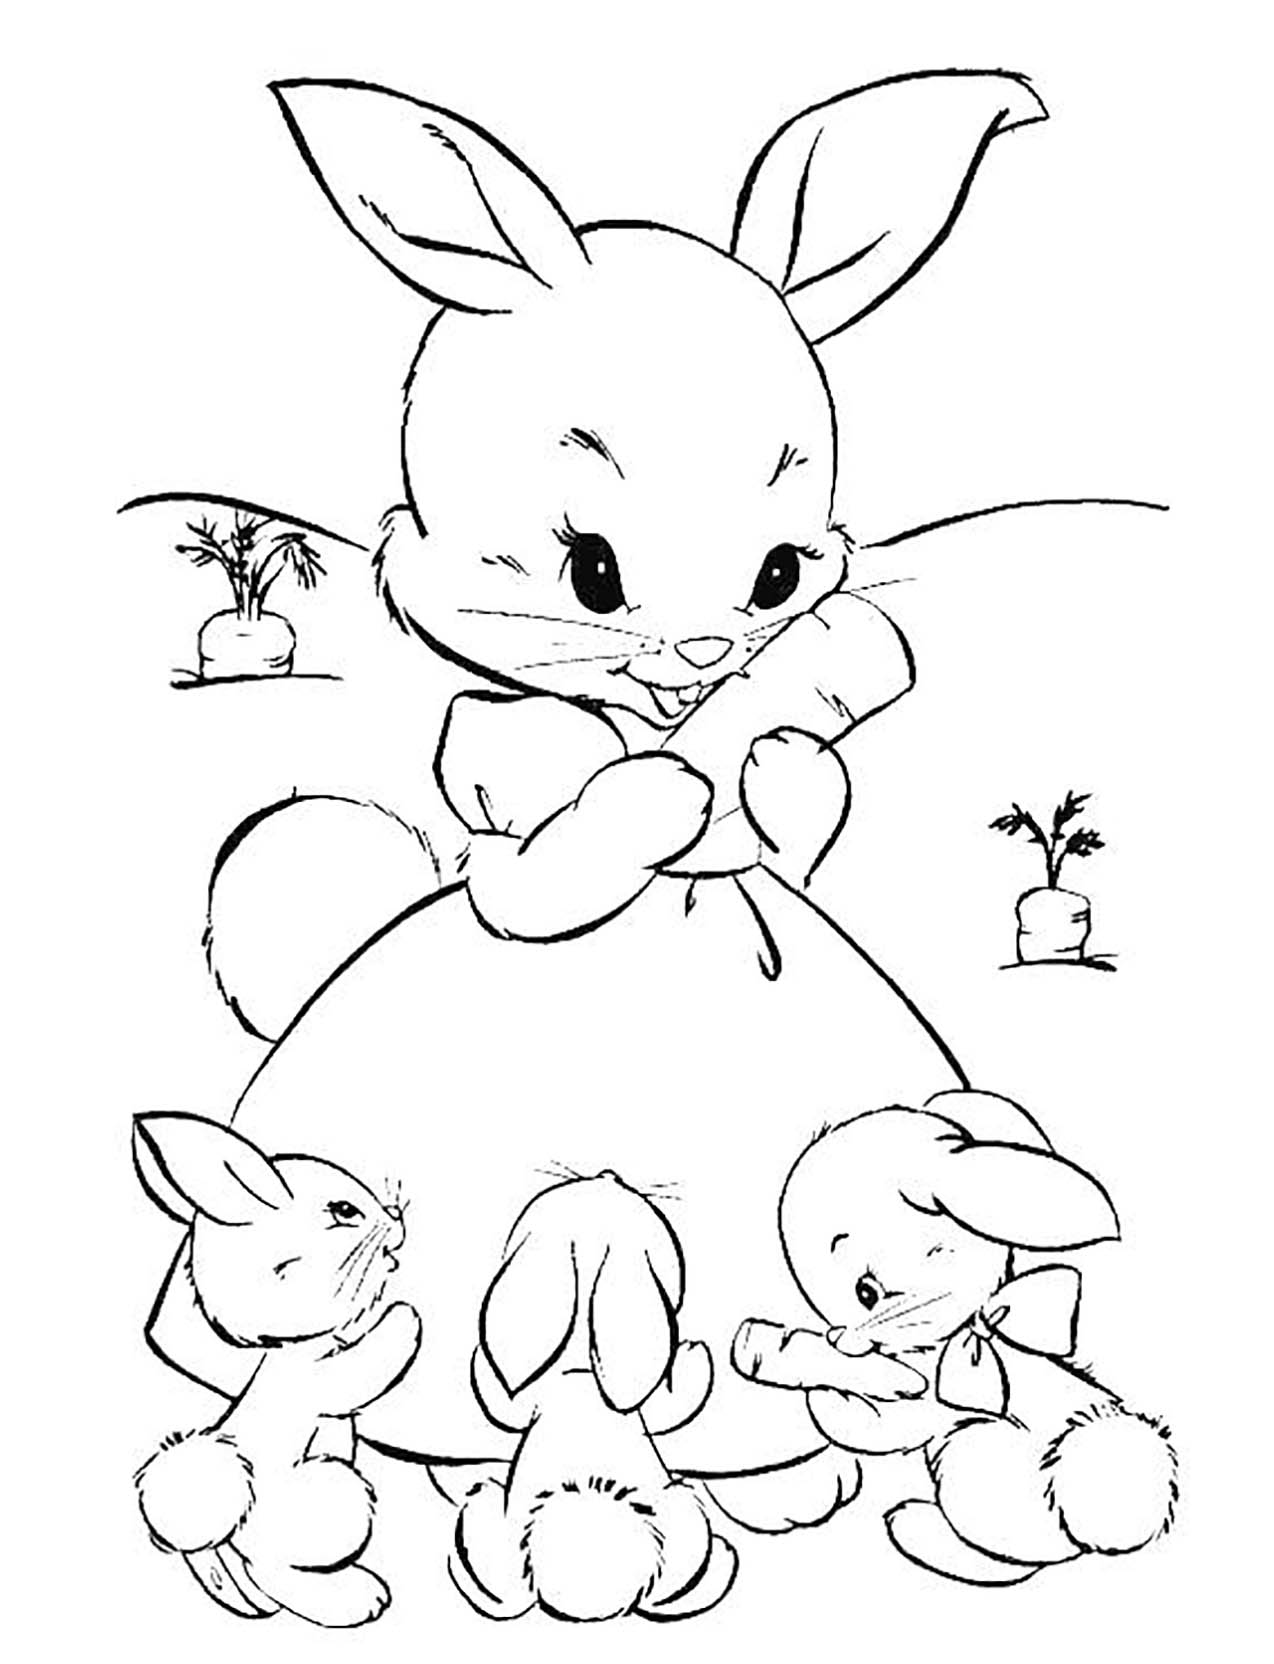 Dibujos para colorear de Conejo para imprimir